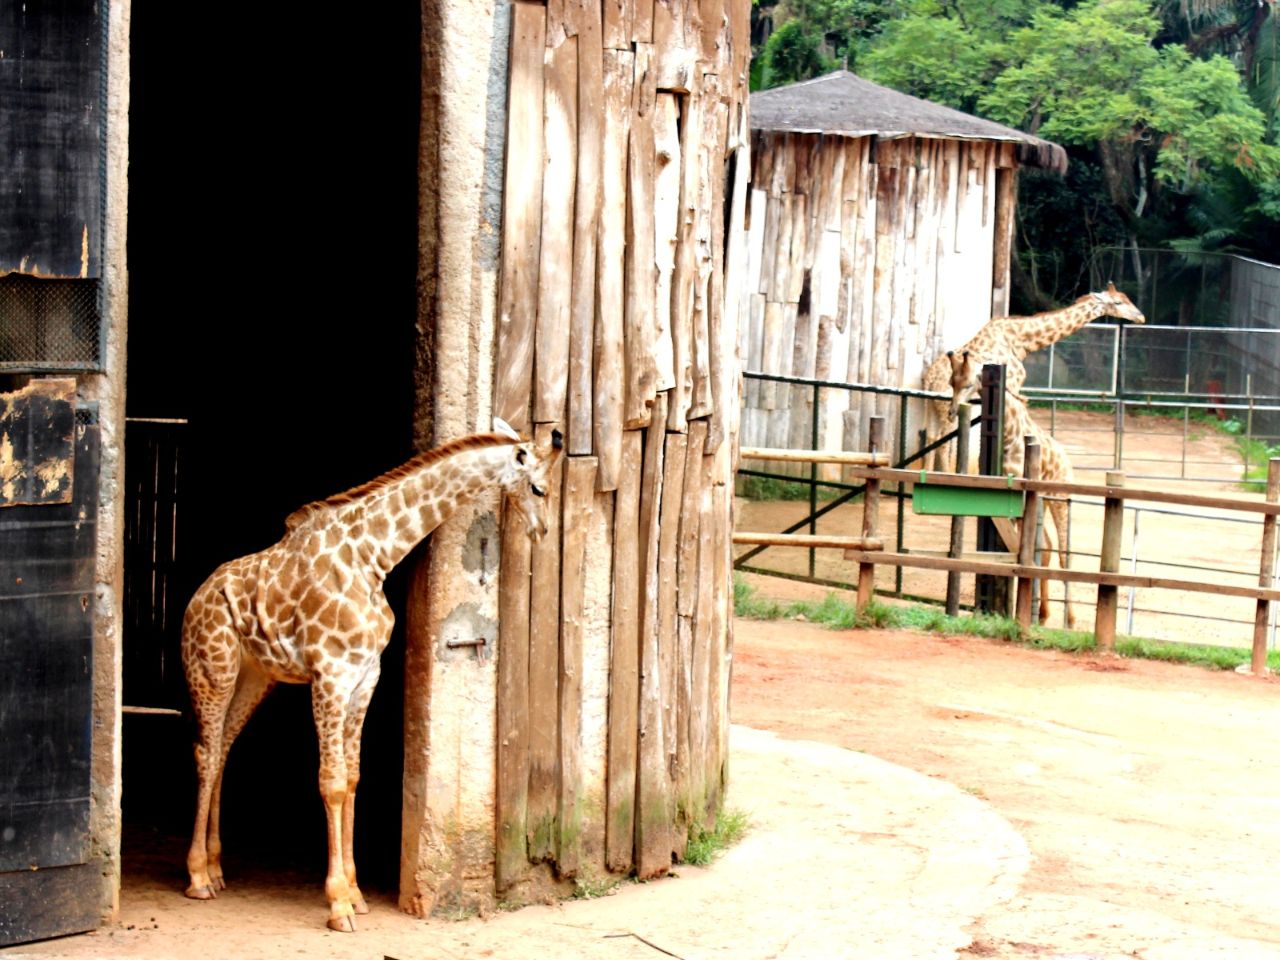 Зоопарк Сан-Паулу Сан-Паулу, Бразилия